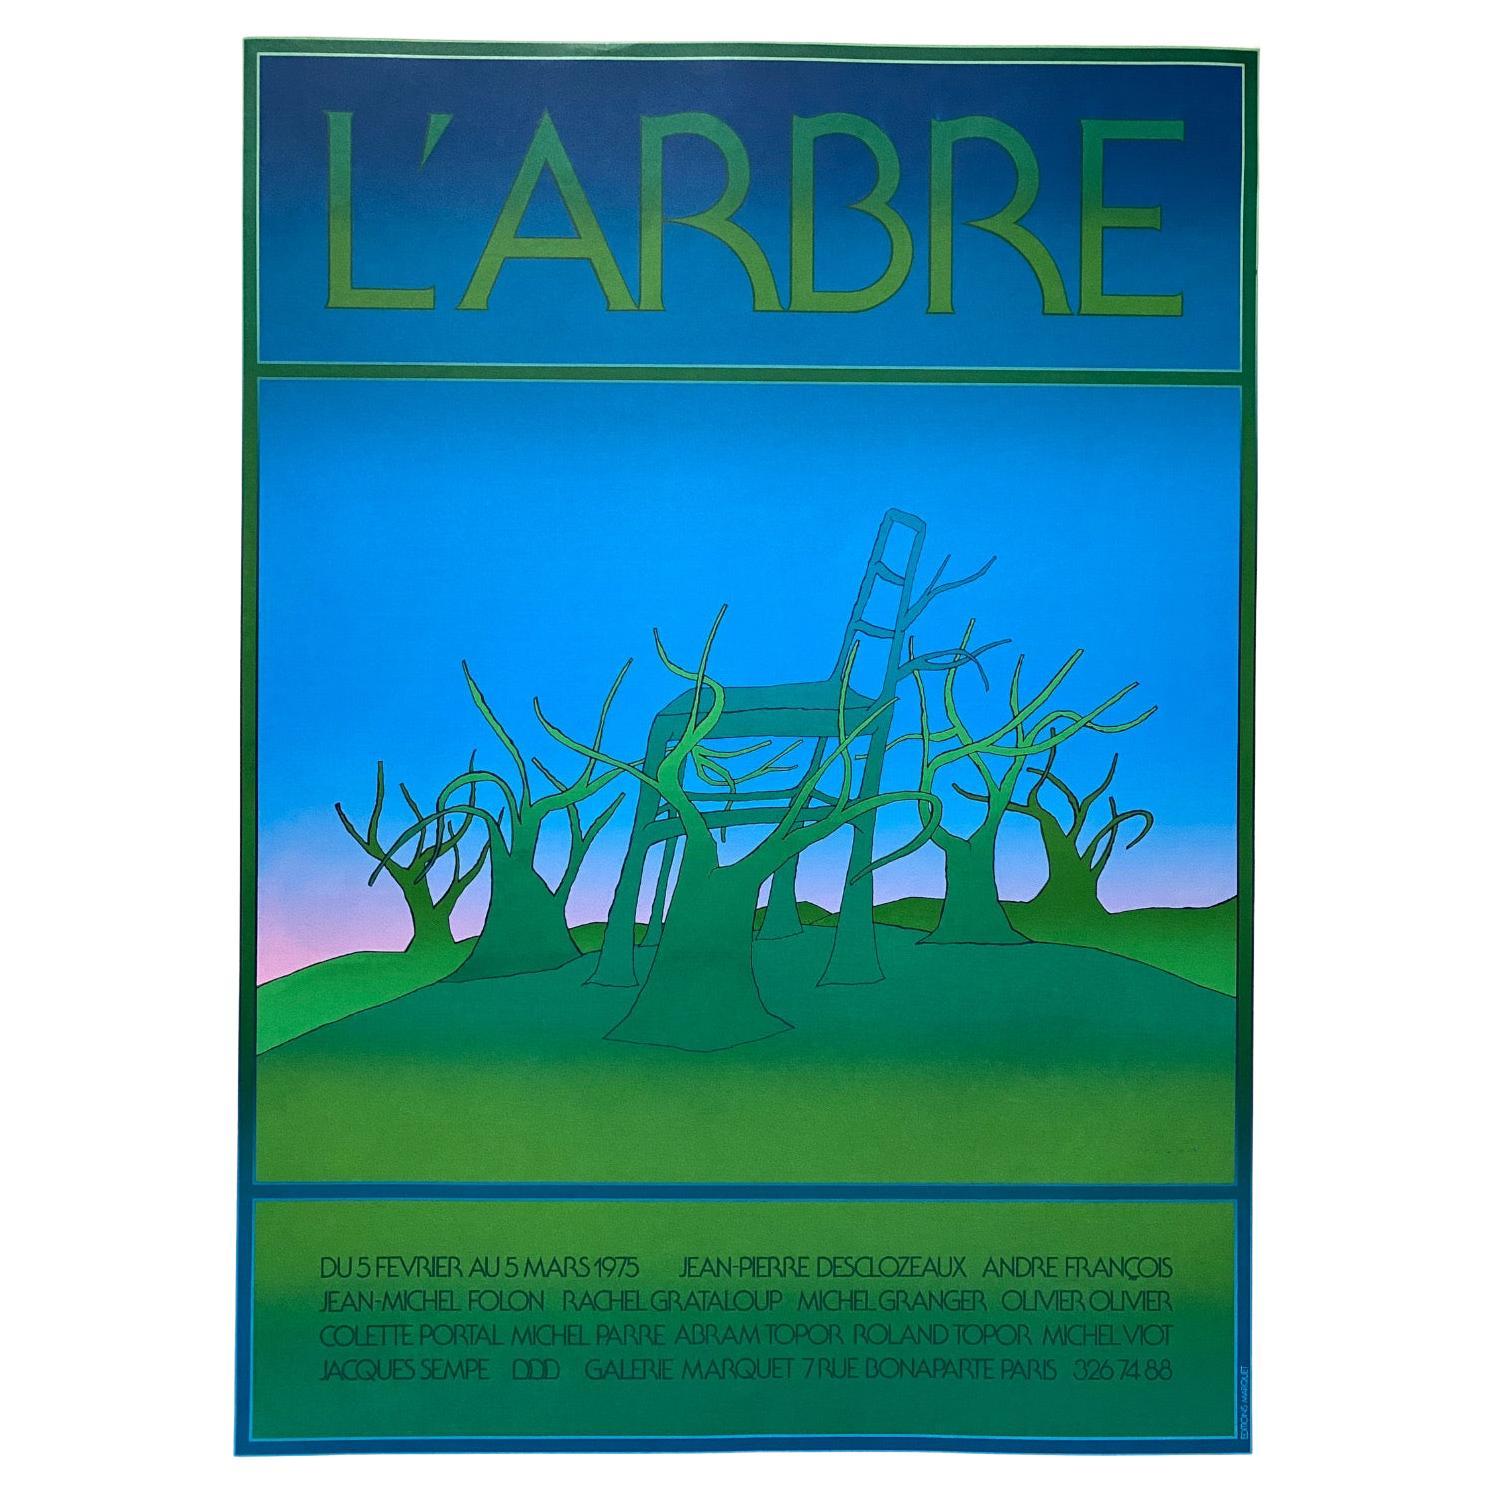 Jean Michel Folon "L' Arbre" Serigraph for Gallerie Marquet, Paris, 1975 For Sale